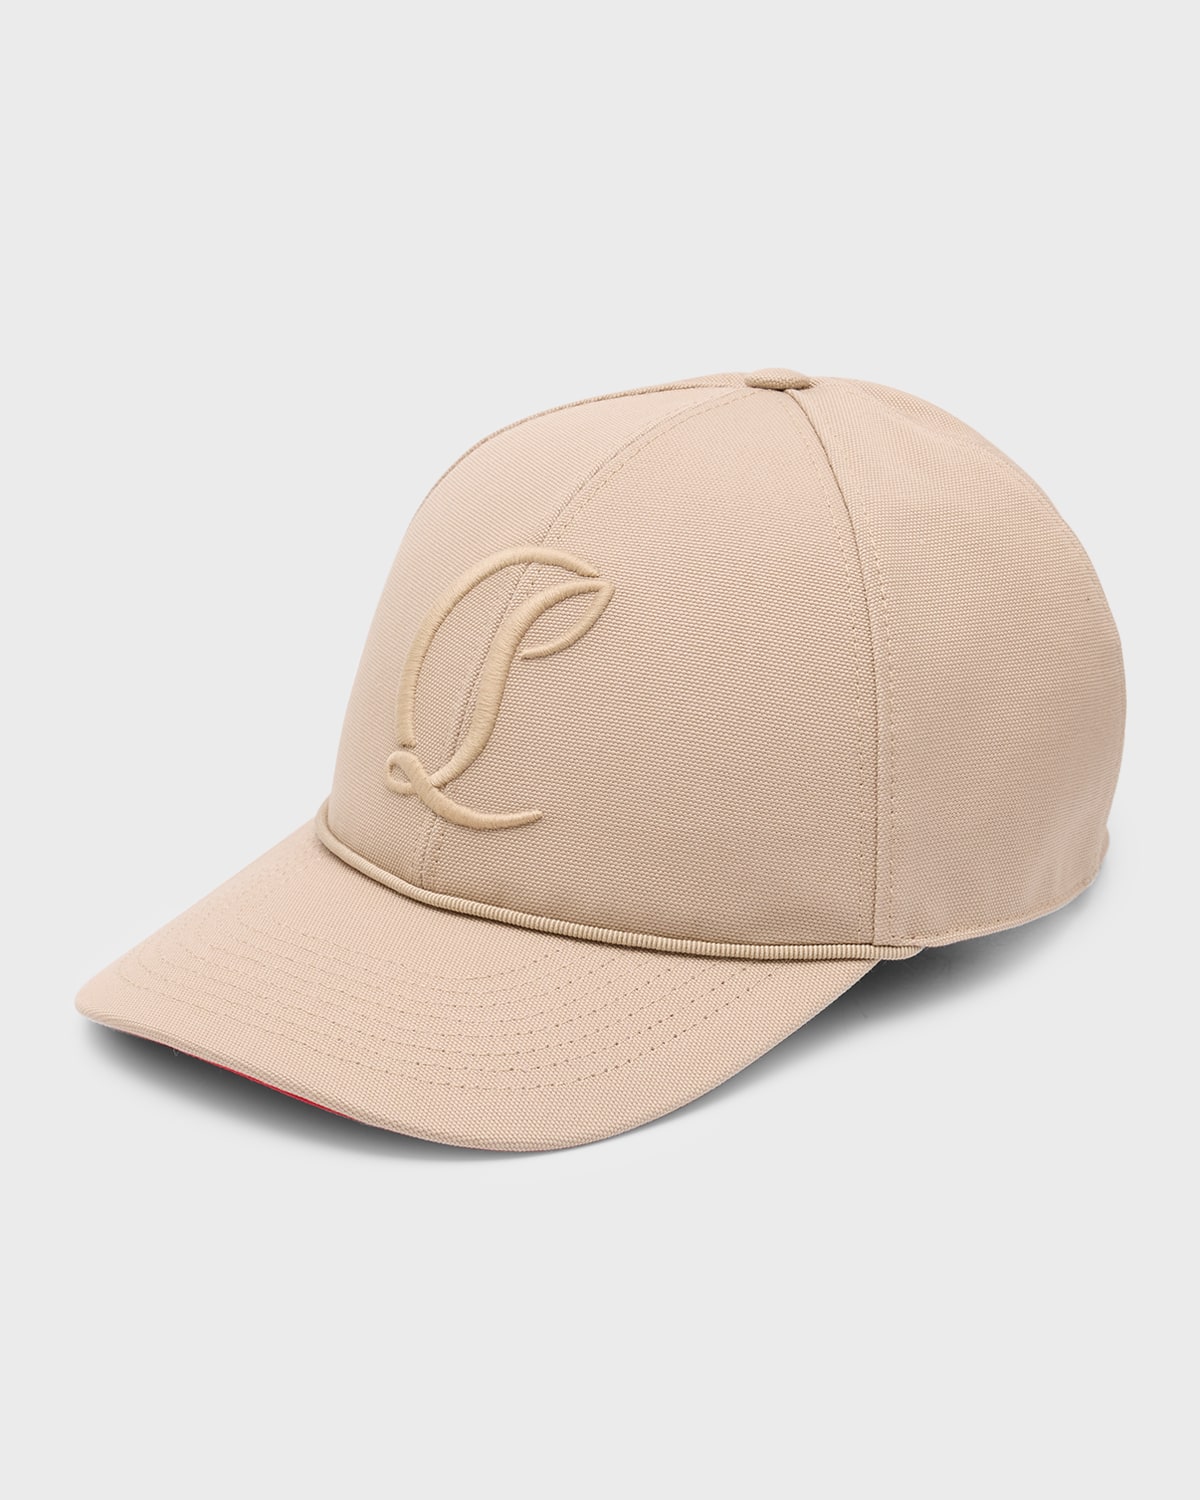 Men's Mooncrest Embroidered Baseball Hat